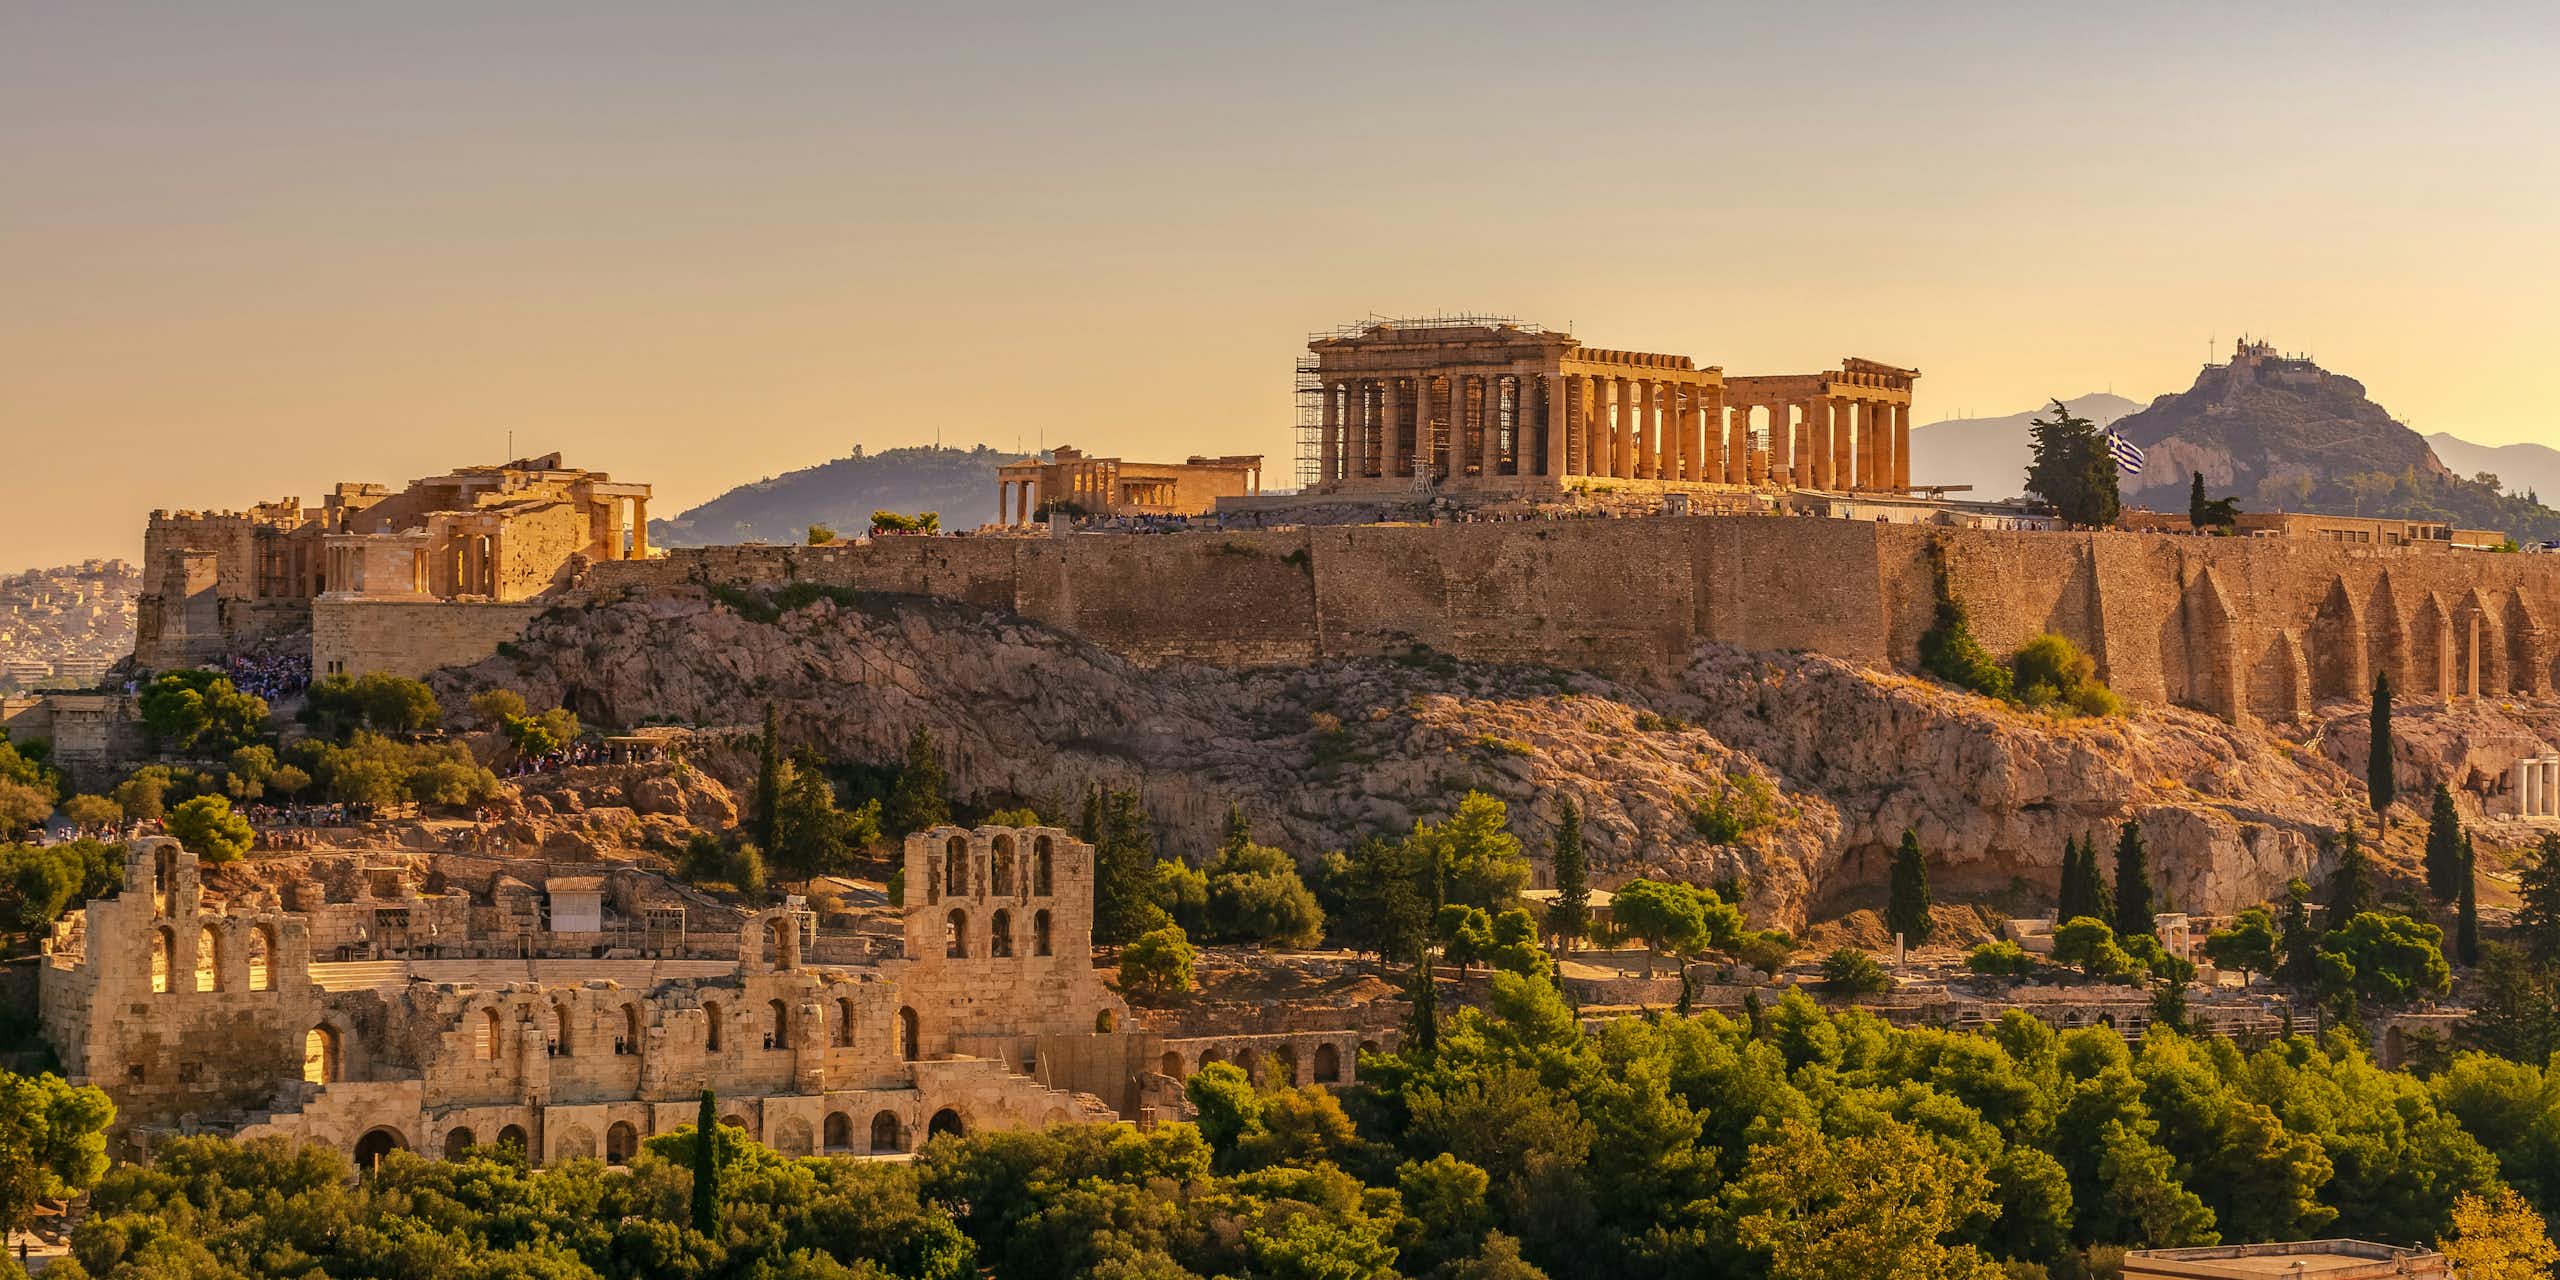 The Acropolis of Athens with the Parthenon.